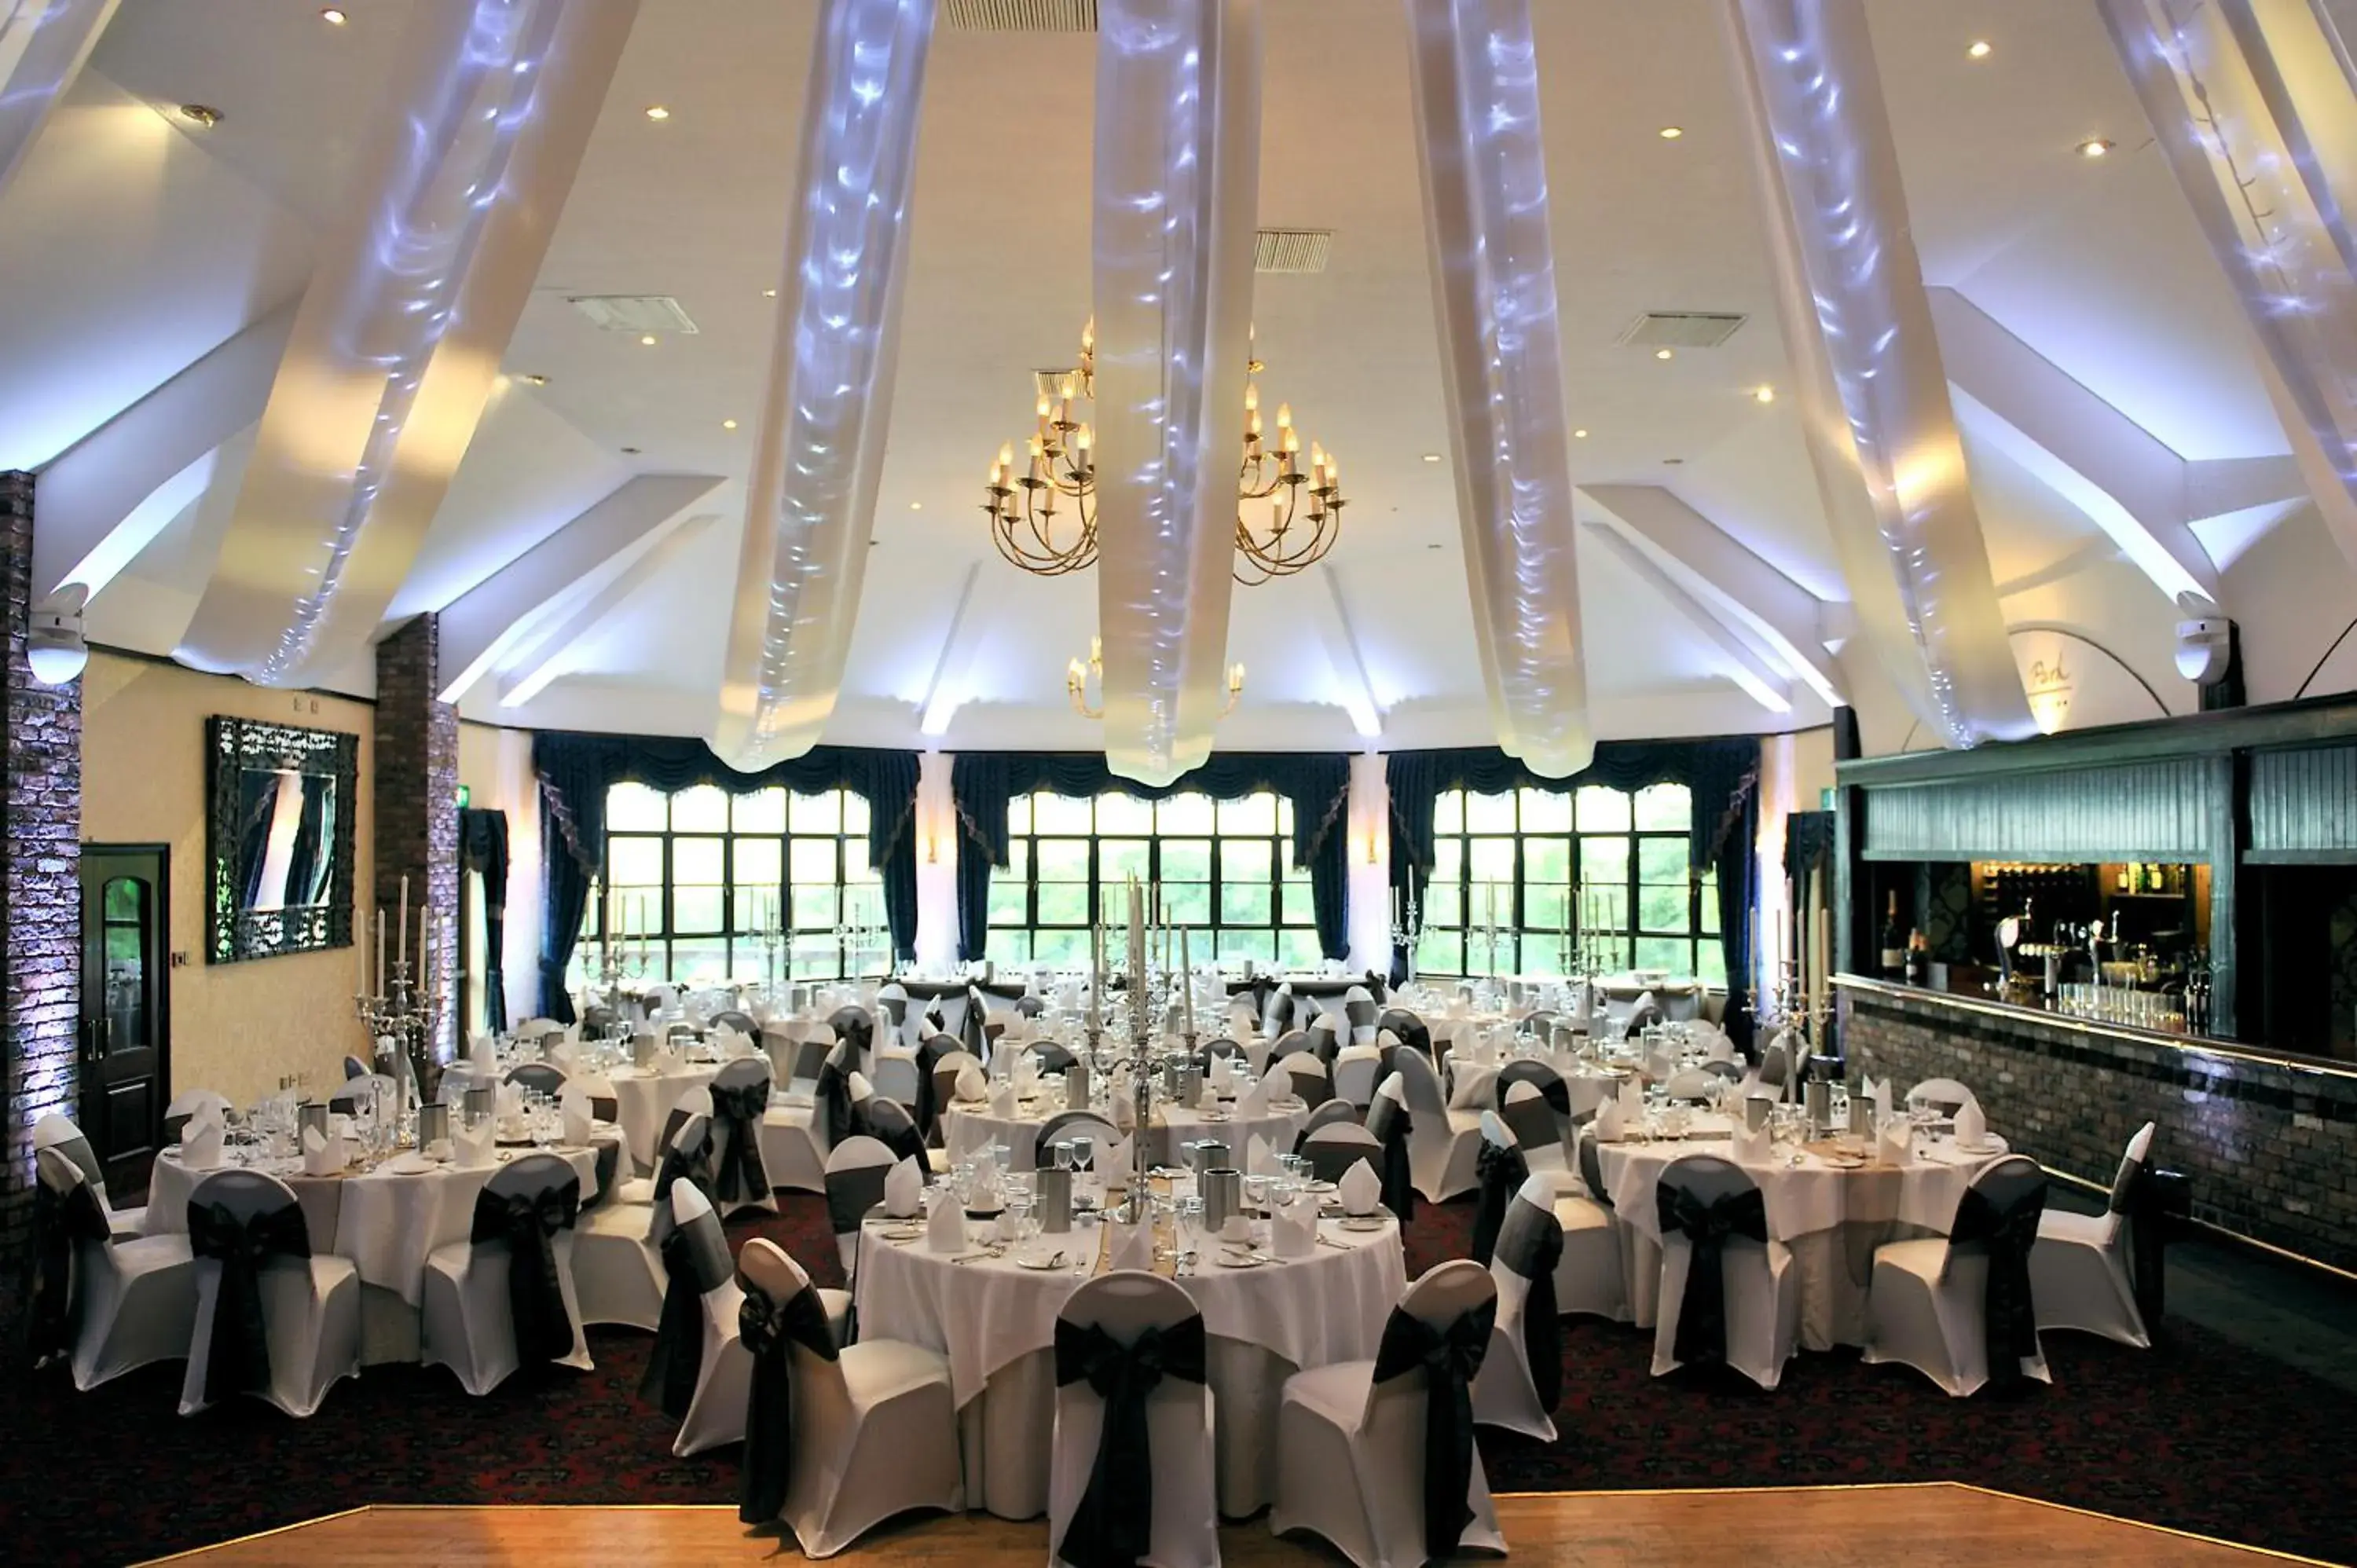 Banquet/Function facilities, Banquet Facilities in Woodbury Park Hotel & Spa